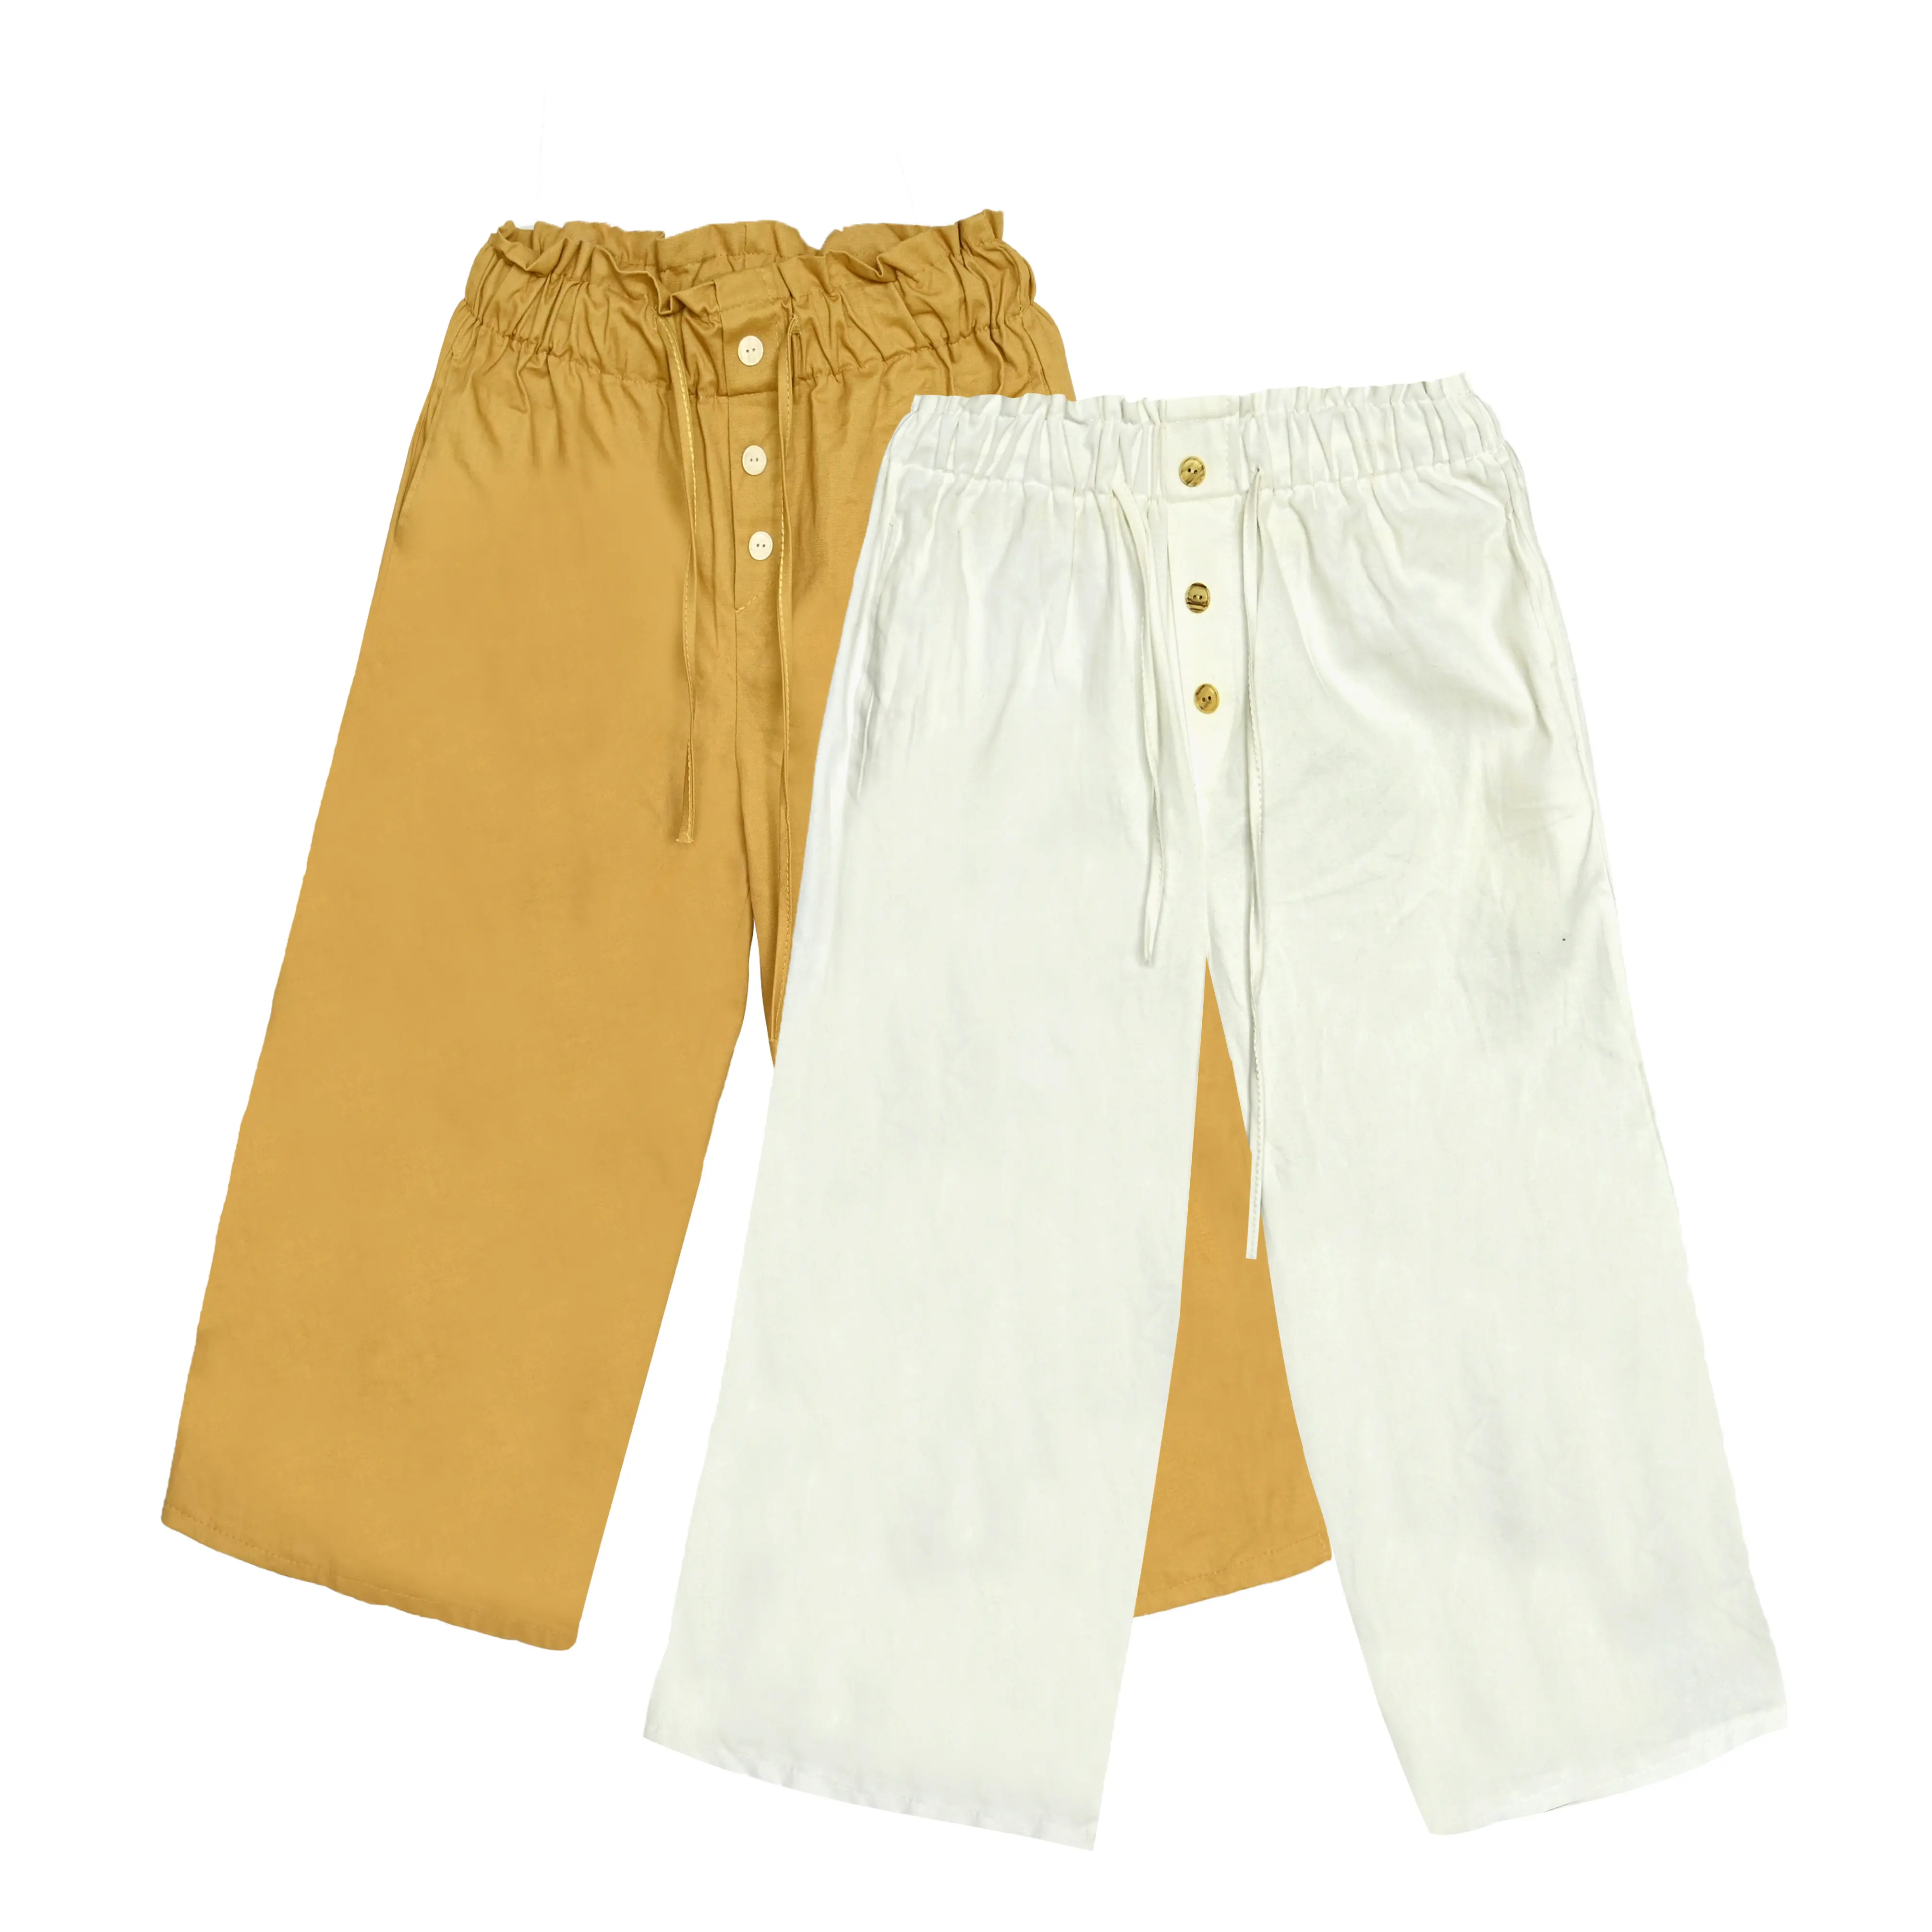 Pantalones de color sólido para mujer Pantalones casuales de cintura alta Culotte Pantalones largos sueltos Ropa deportiva